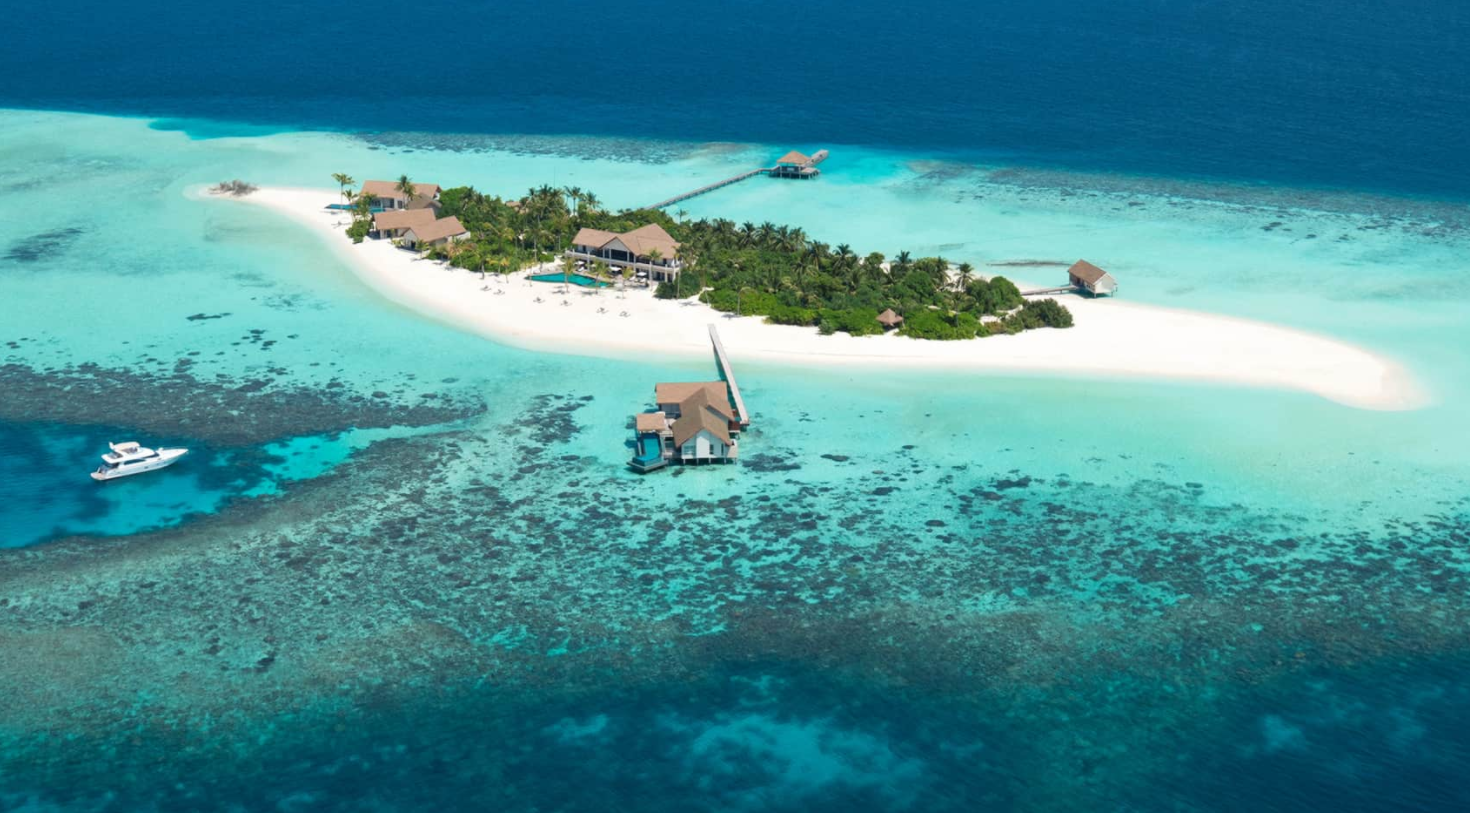  四季沃亚瓦私人岛 four saesaon private island at voavah 鸟瞰地图birdview map清晰版 马尔代夫